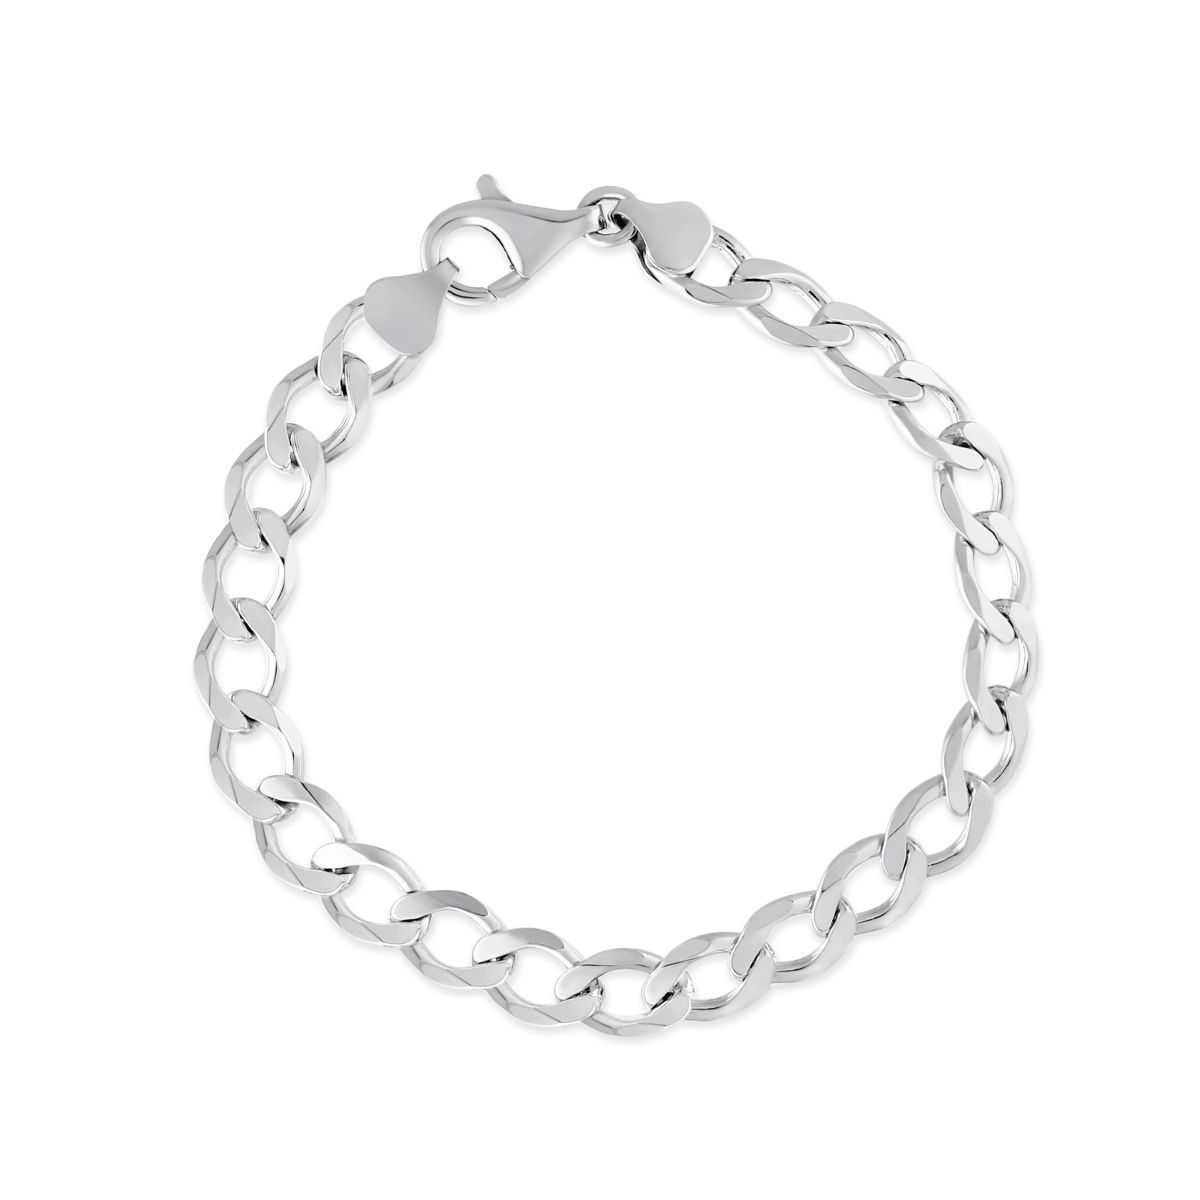 Sterling Silver Curb Link Bracelet, 8